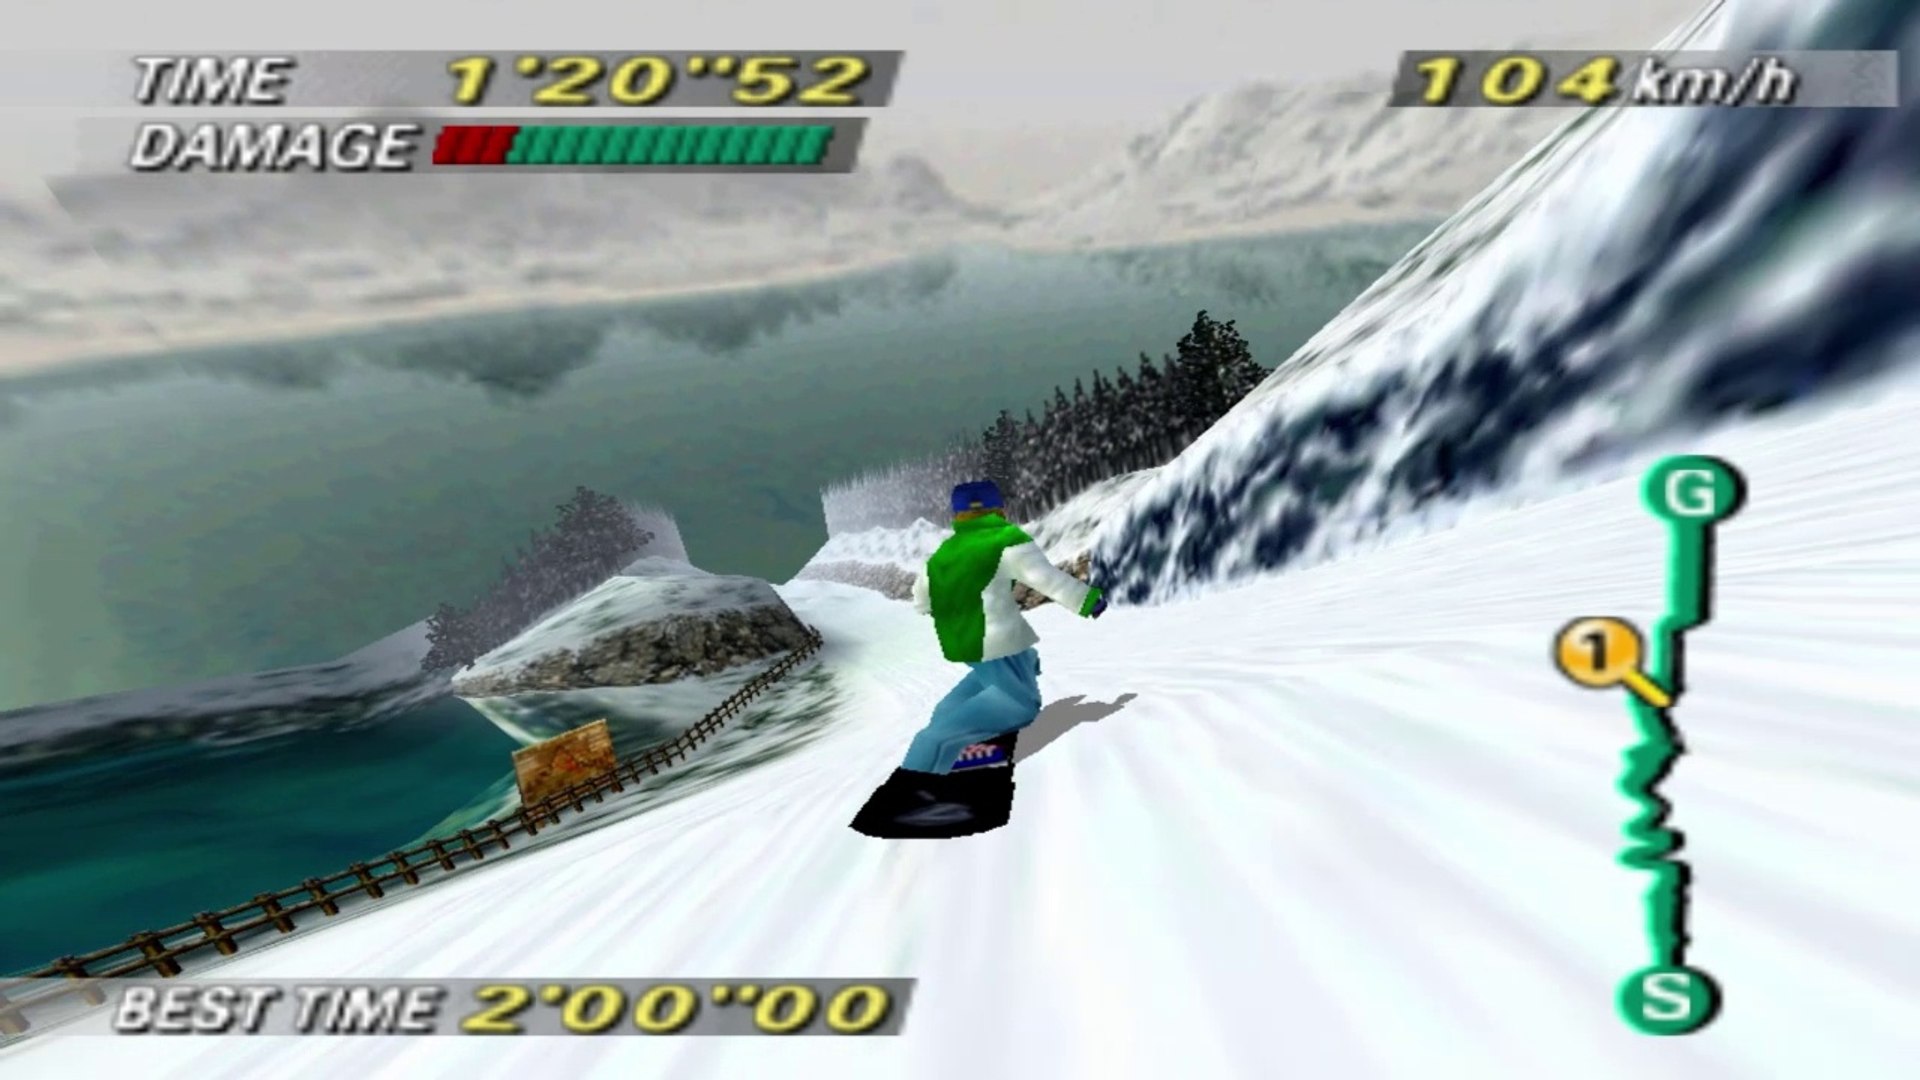 1080° Snowboarding - Crystal Peak (N64 Gameplay) - video Dailymotion